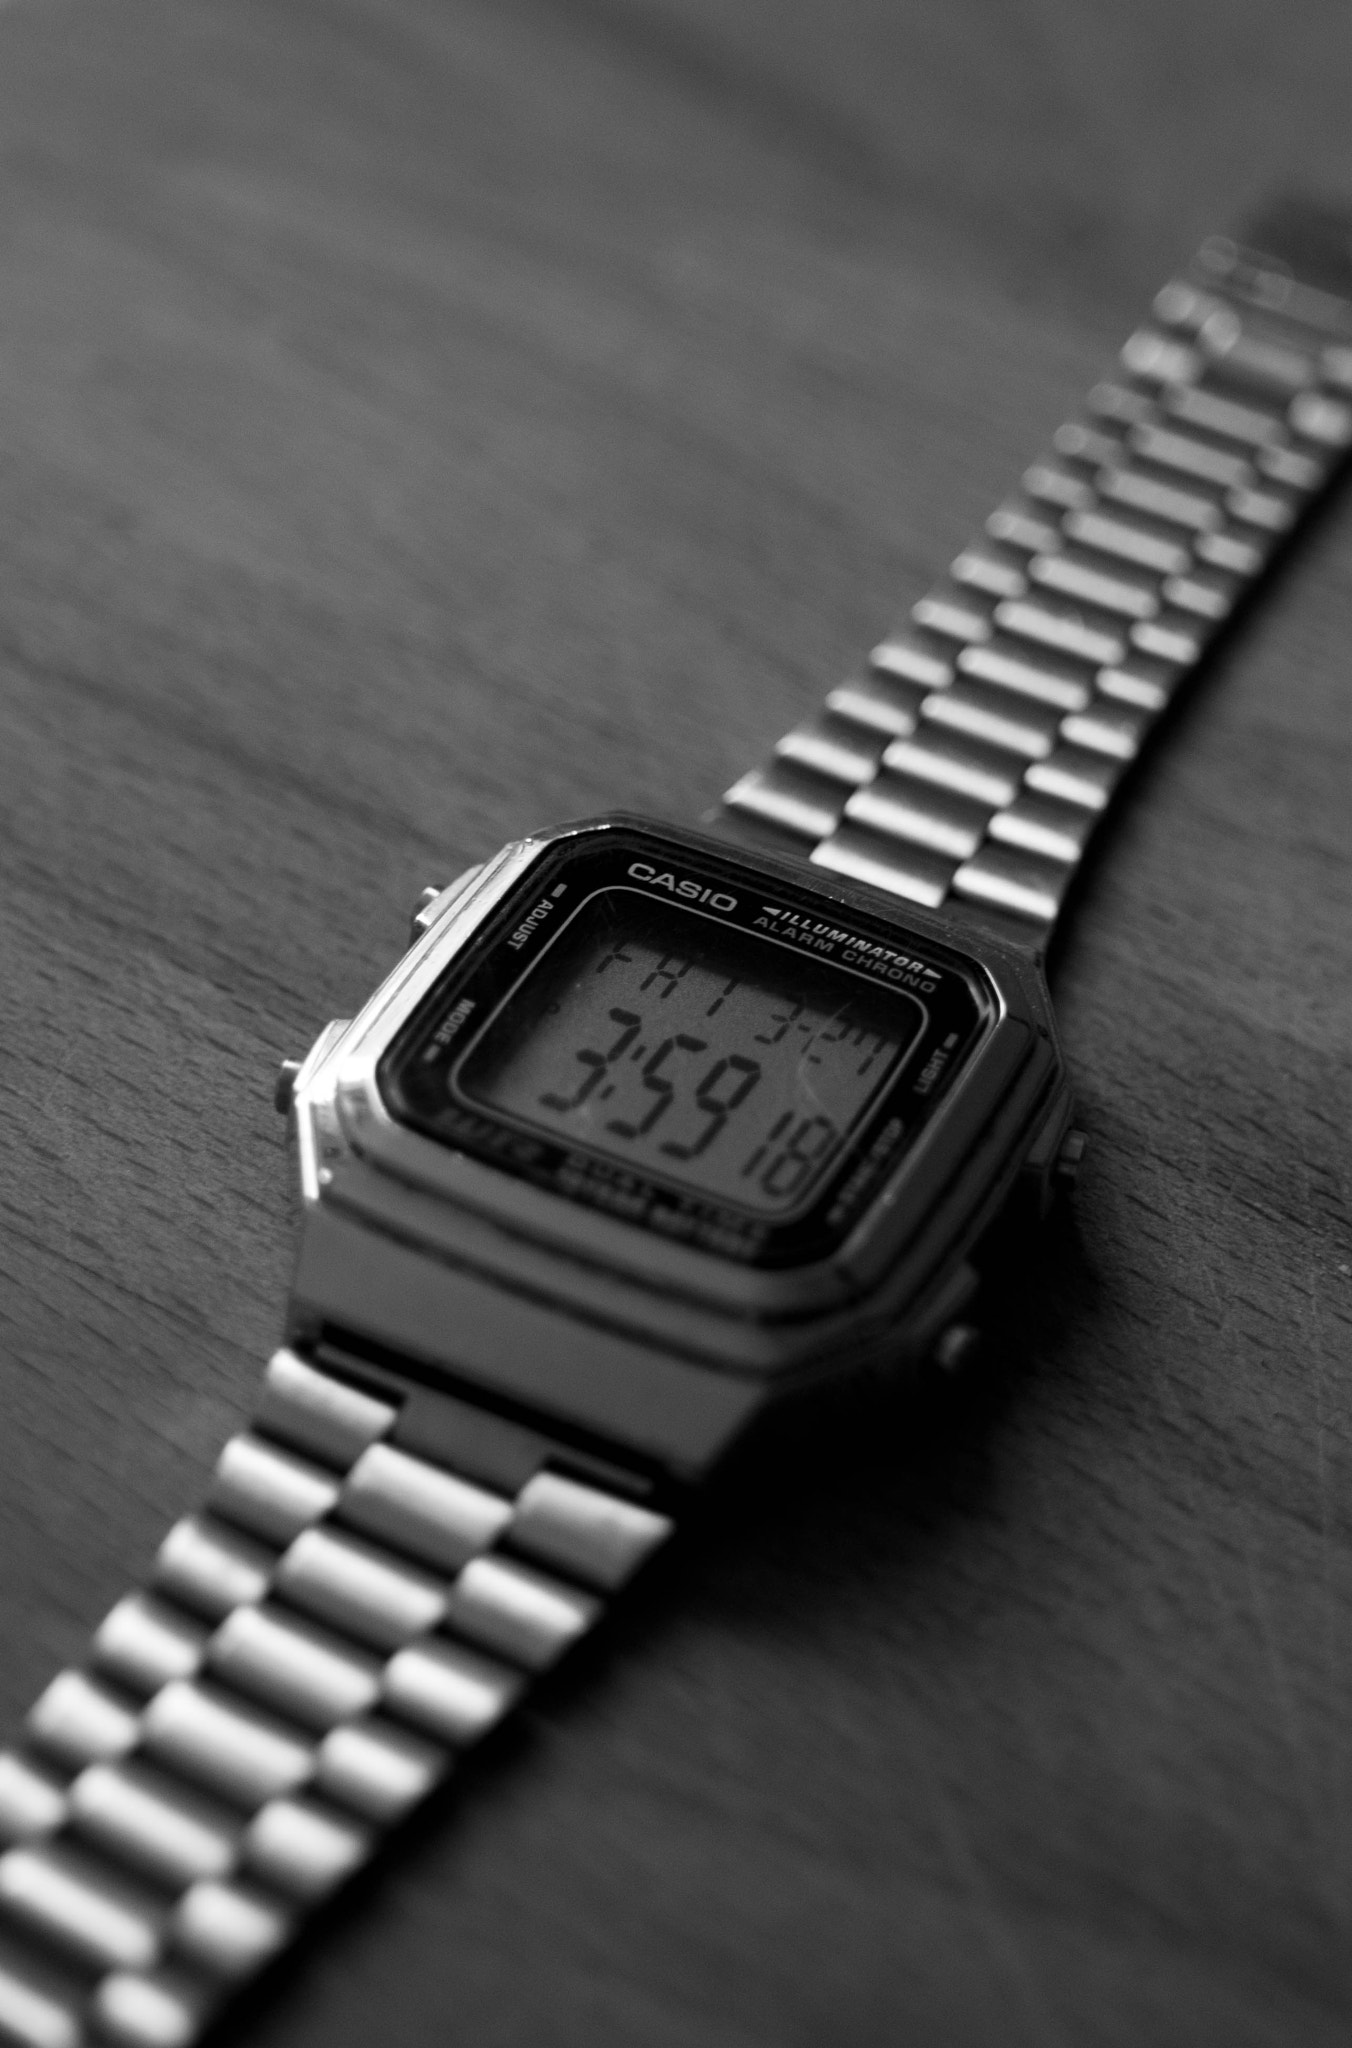 Sigma 30mm F2.8 EX DN sample photo. Casio a178w digital watch photography